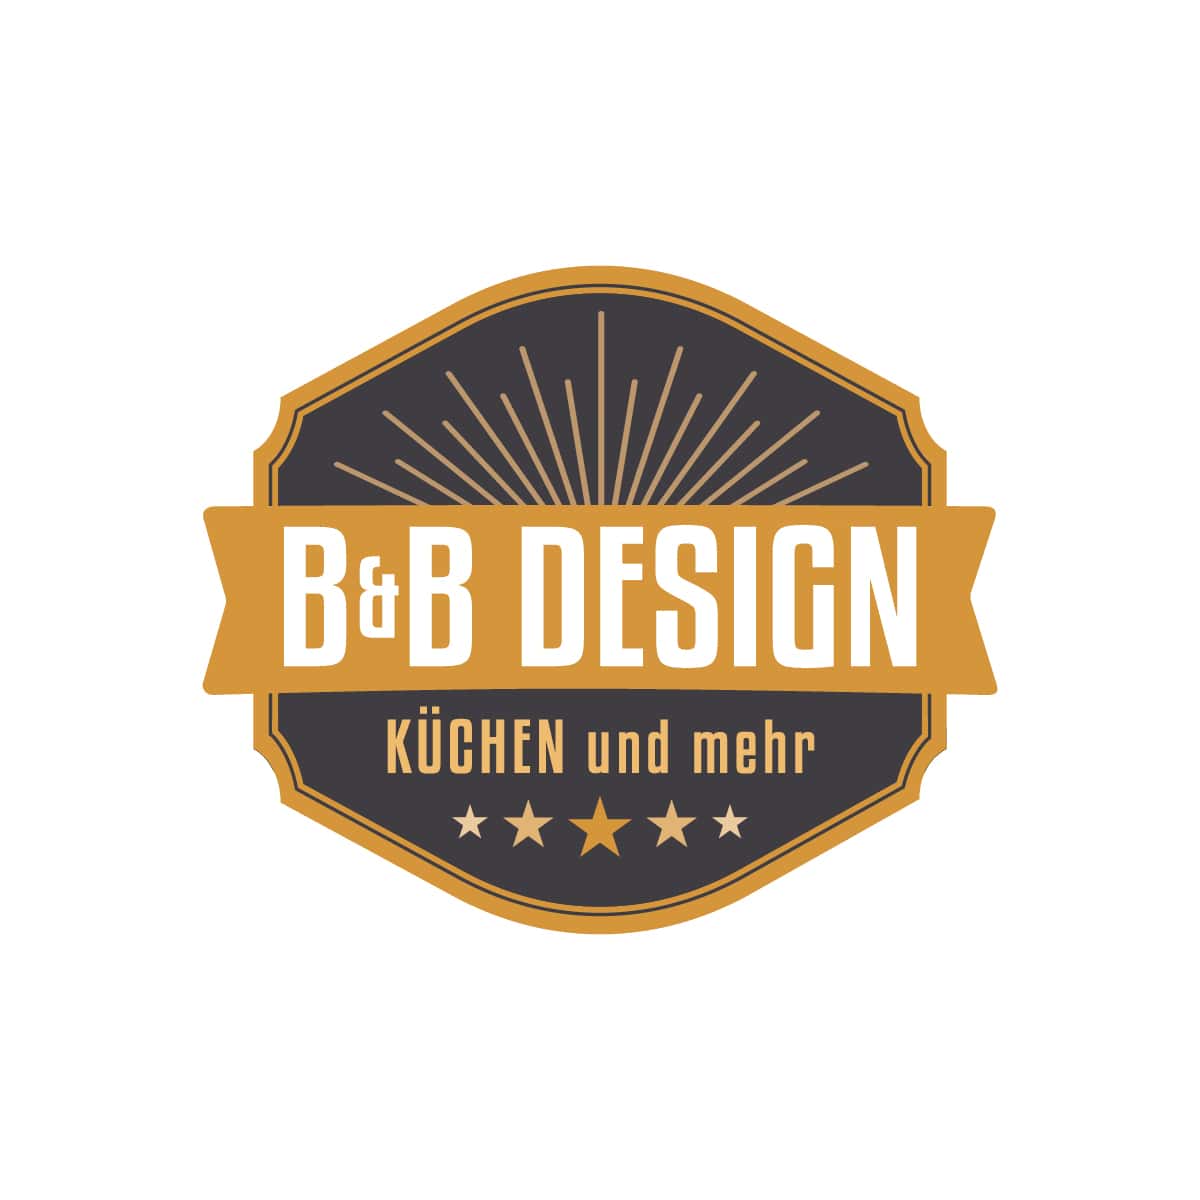 Der Küchenring Logo Portrait - B&B Design